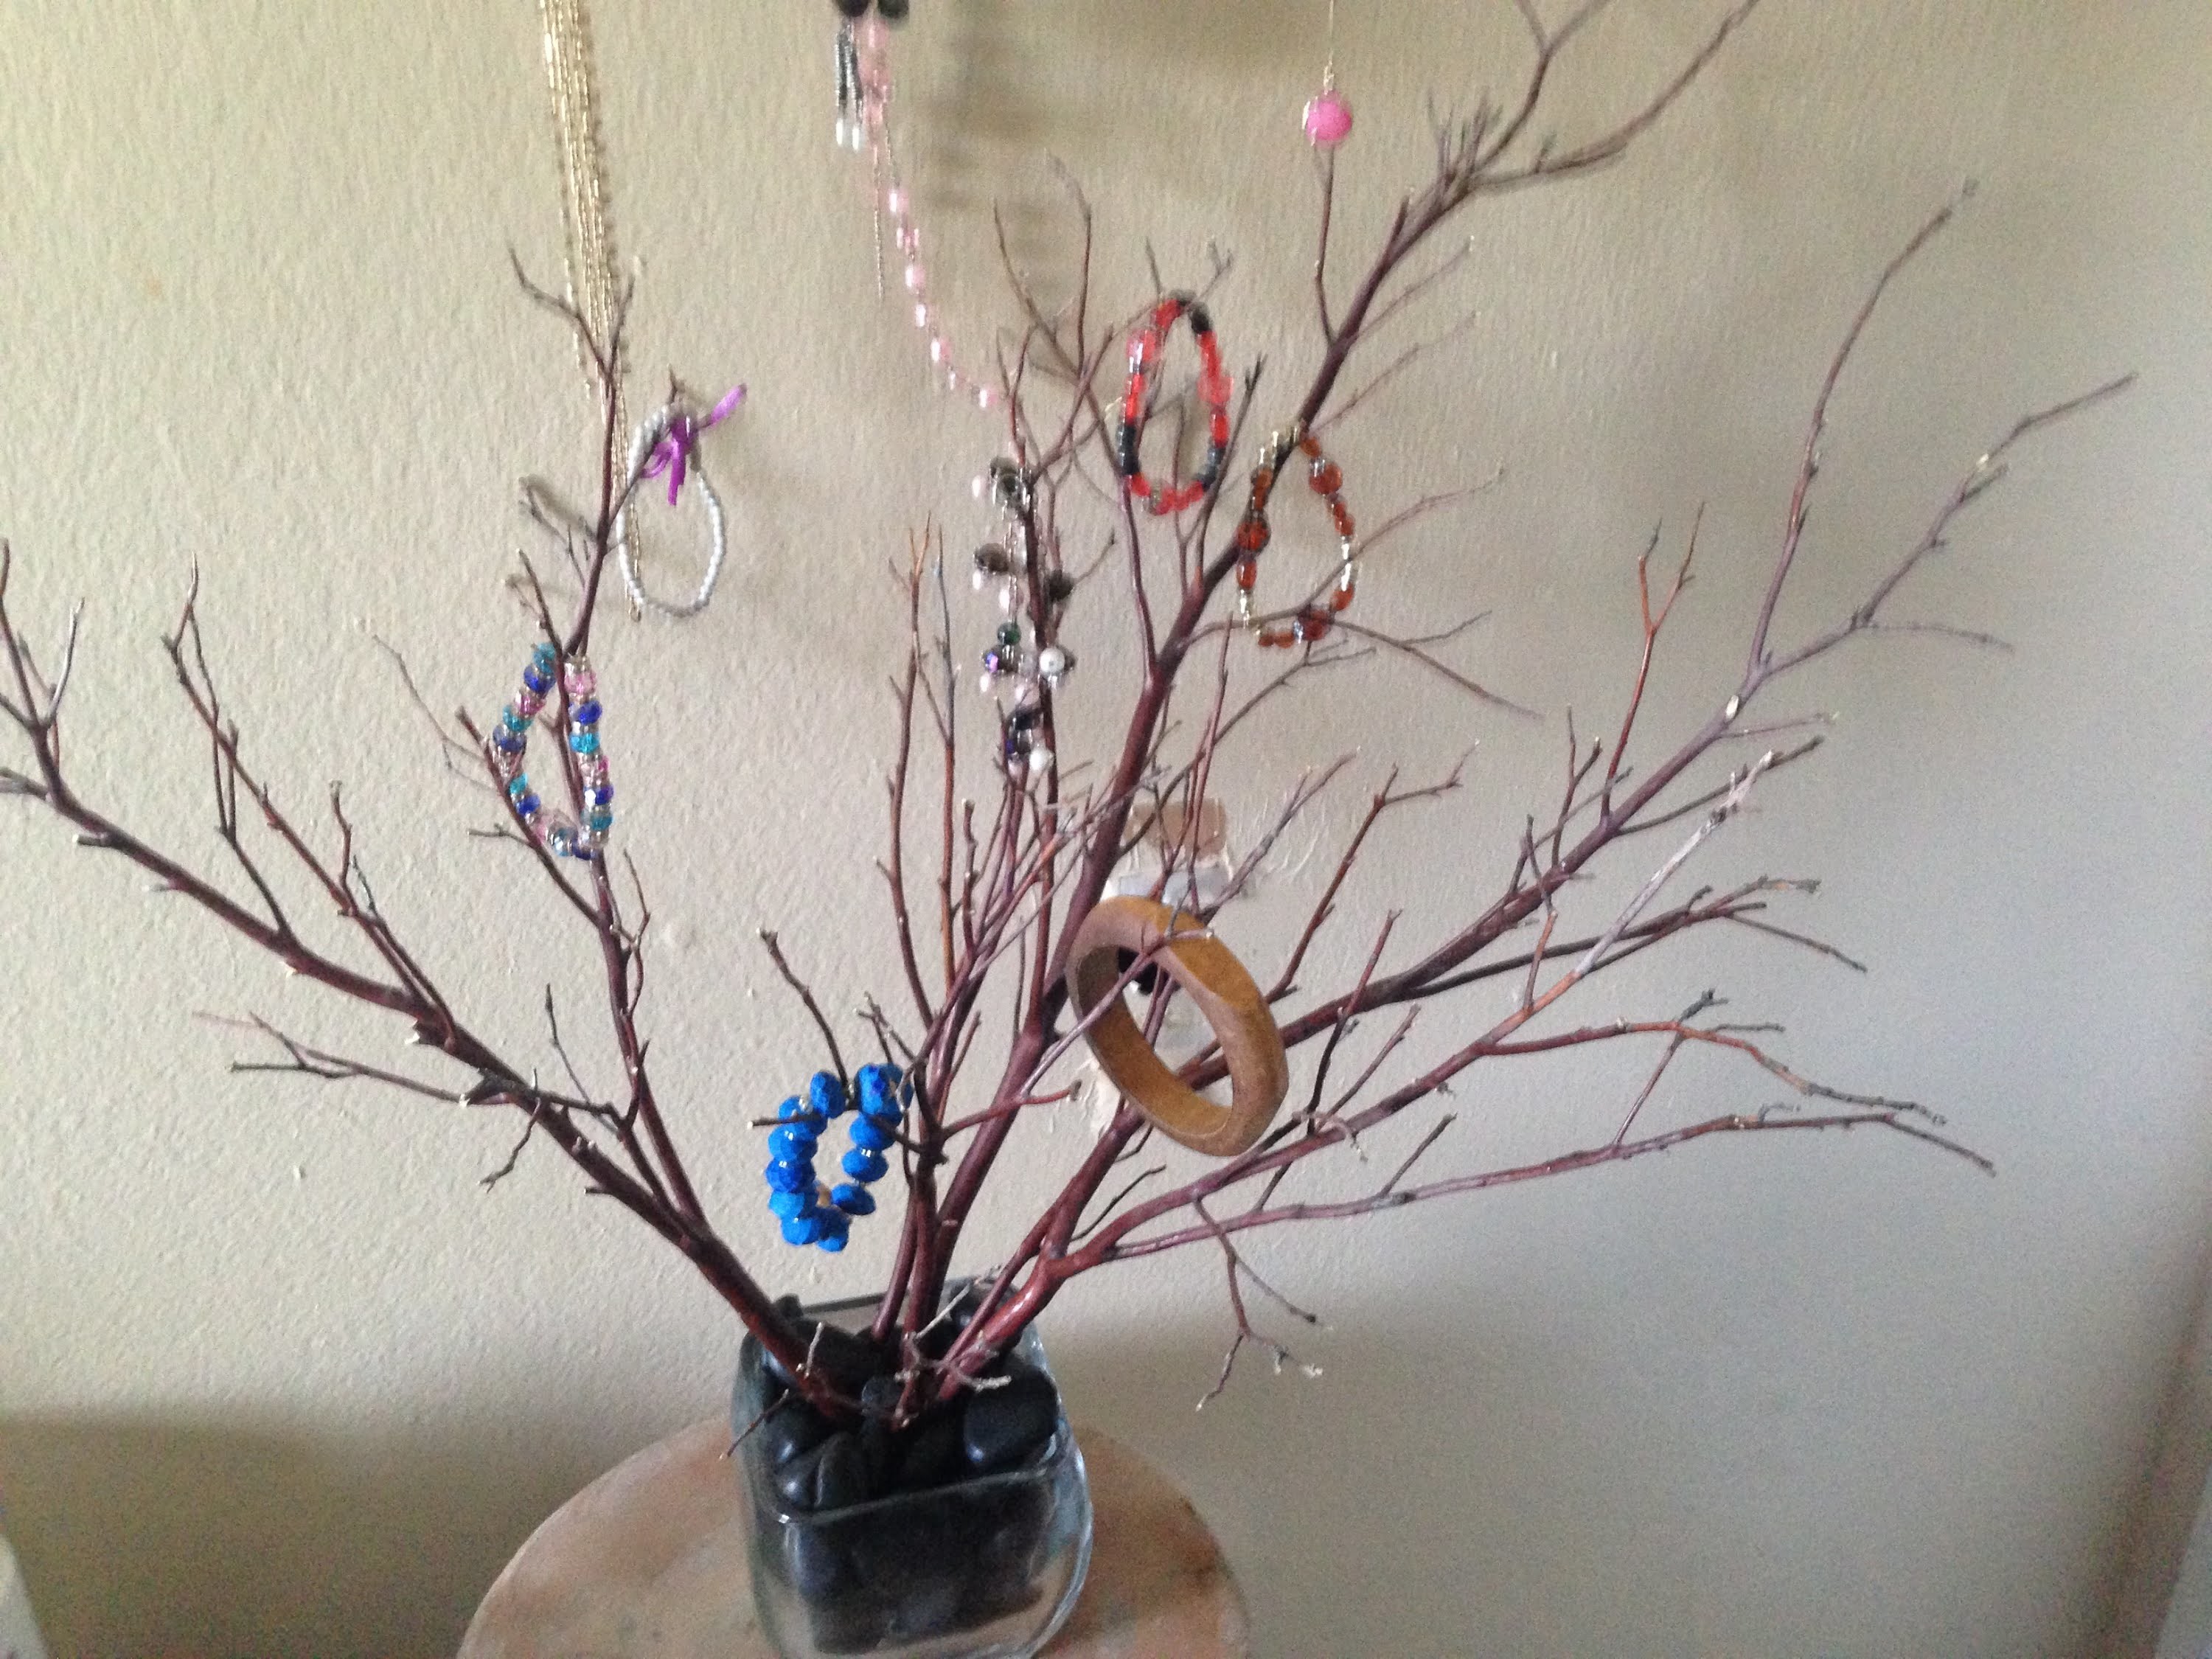 Como hacer un joyero o decoracion con ramas secas